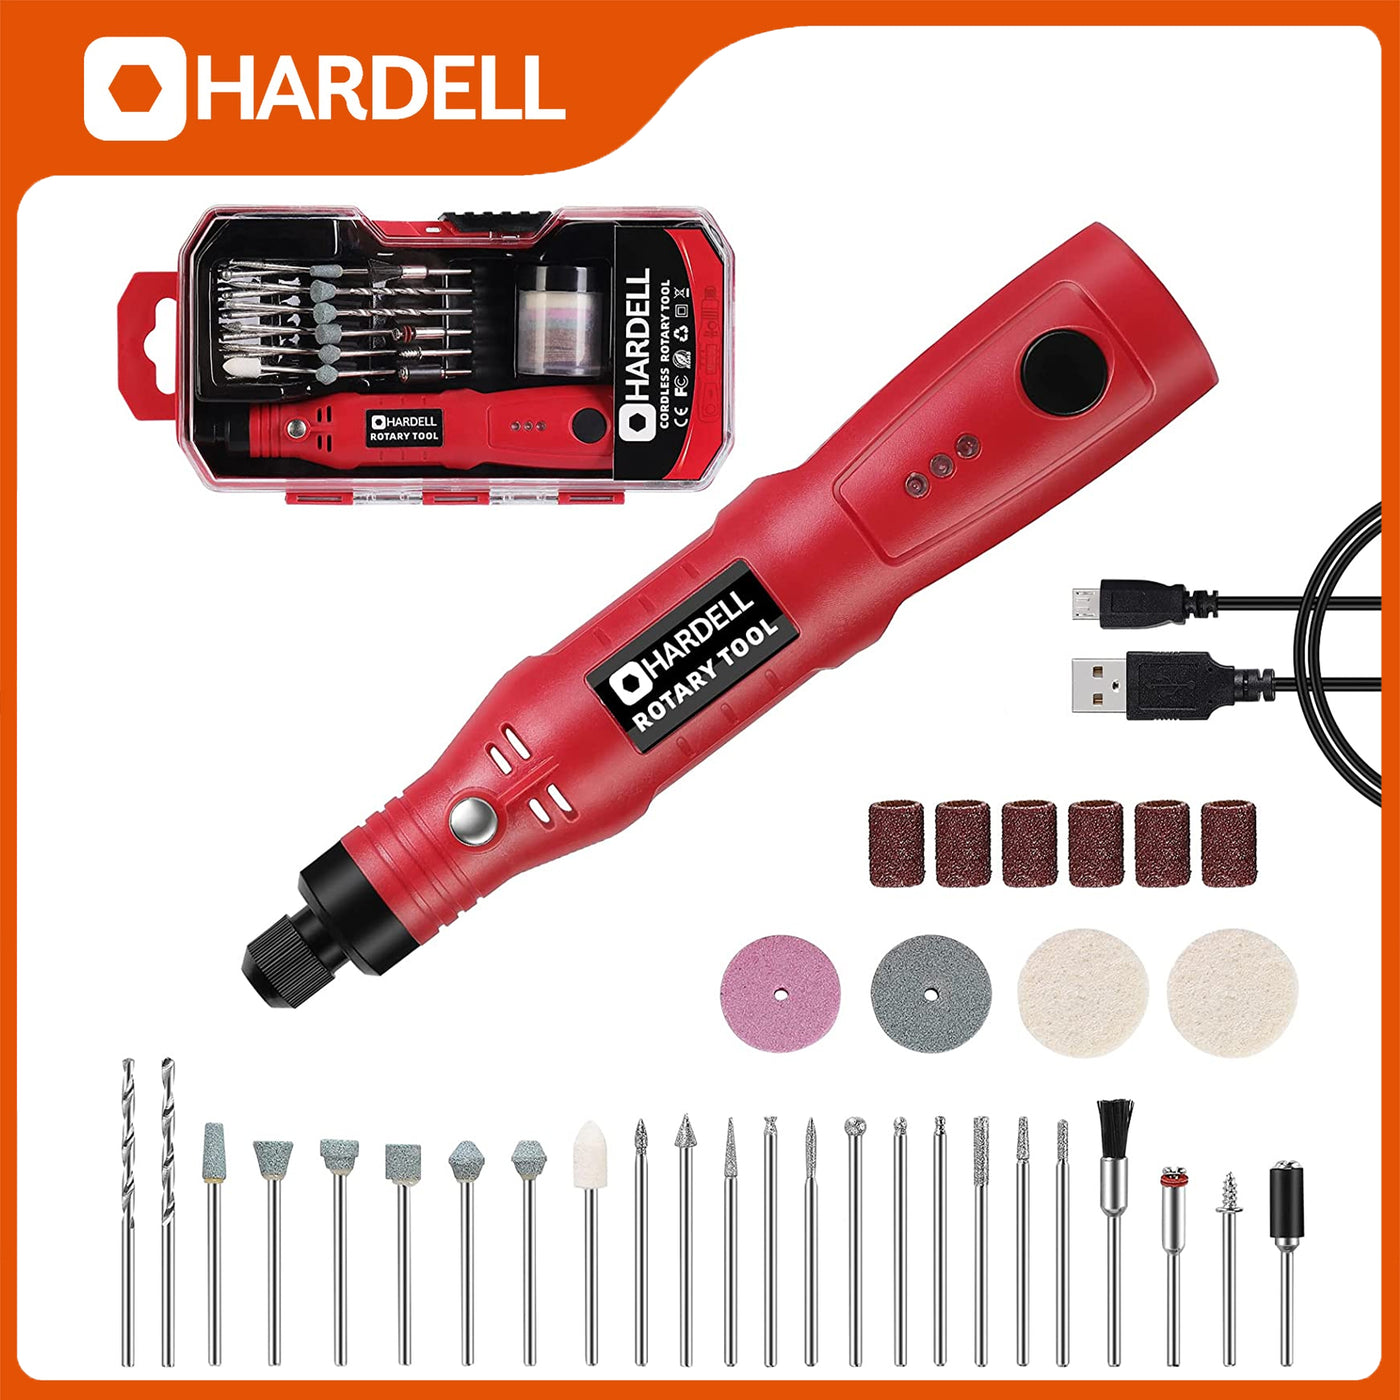 HDRT2260 4V Mini Cordless Rotary Tool - Hardell